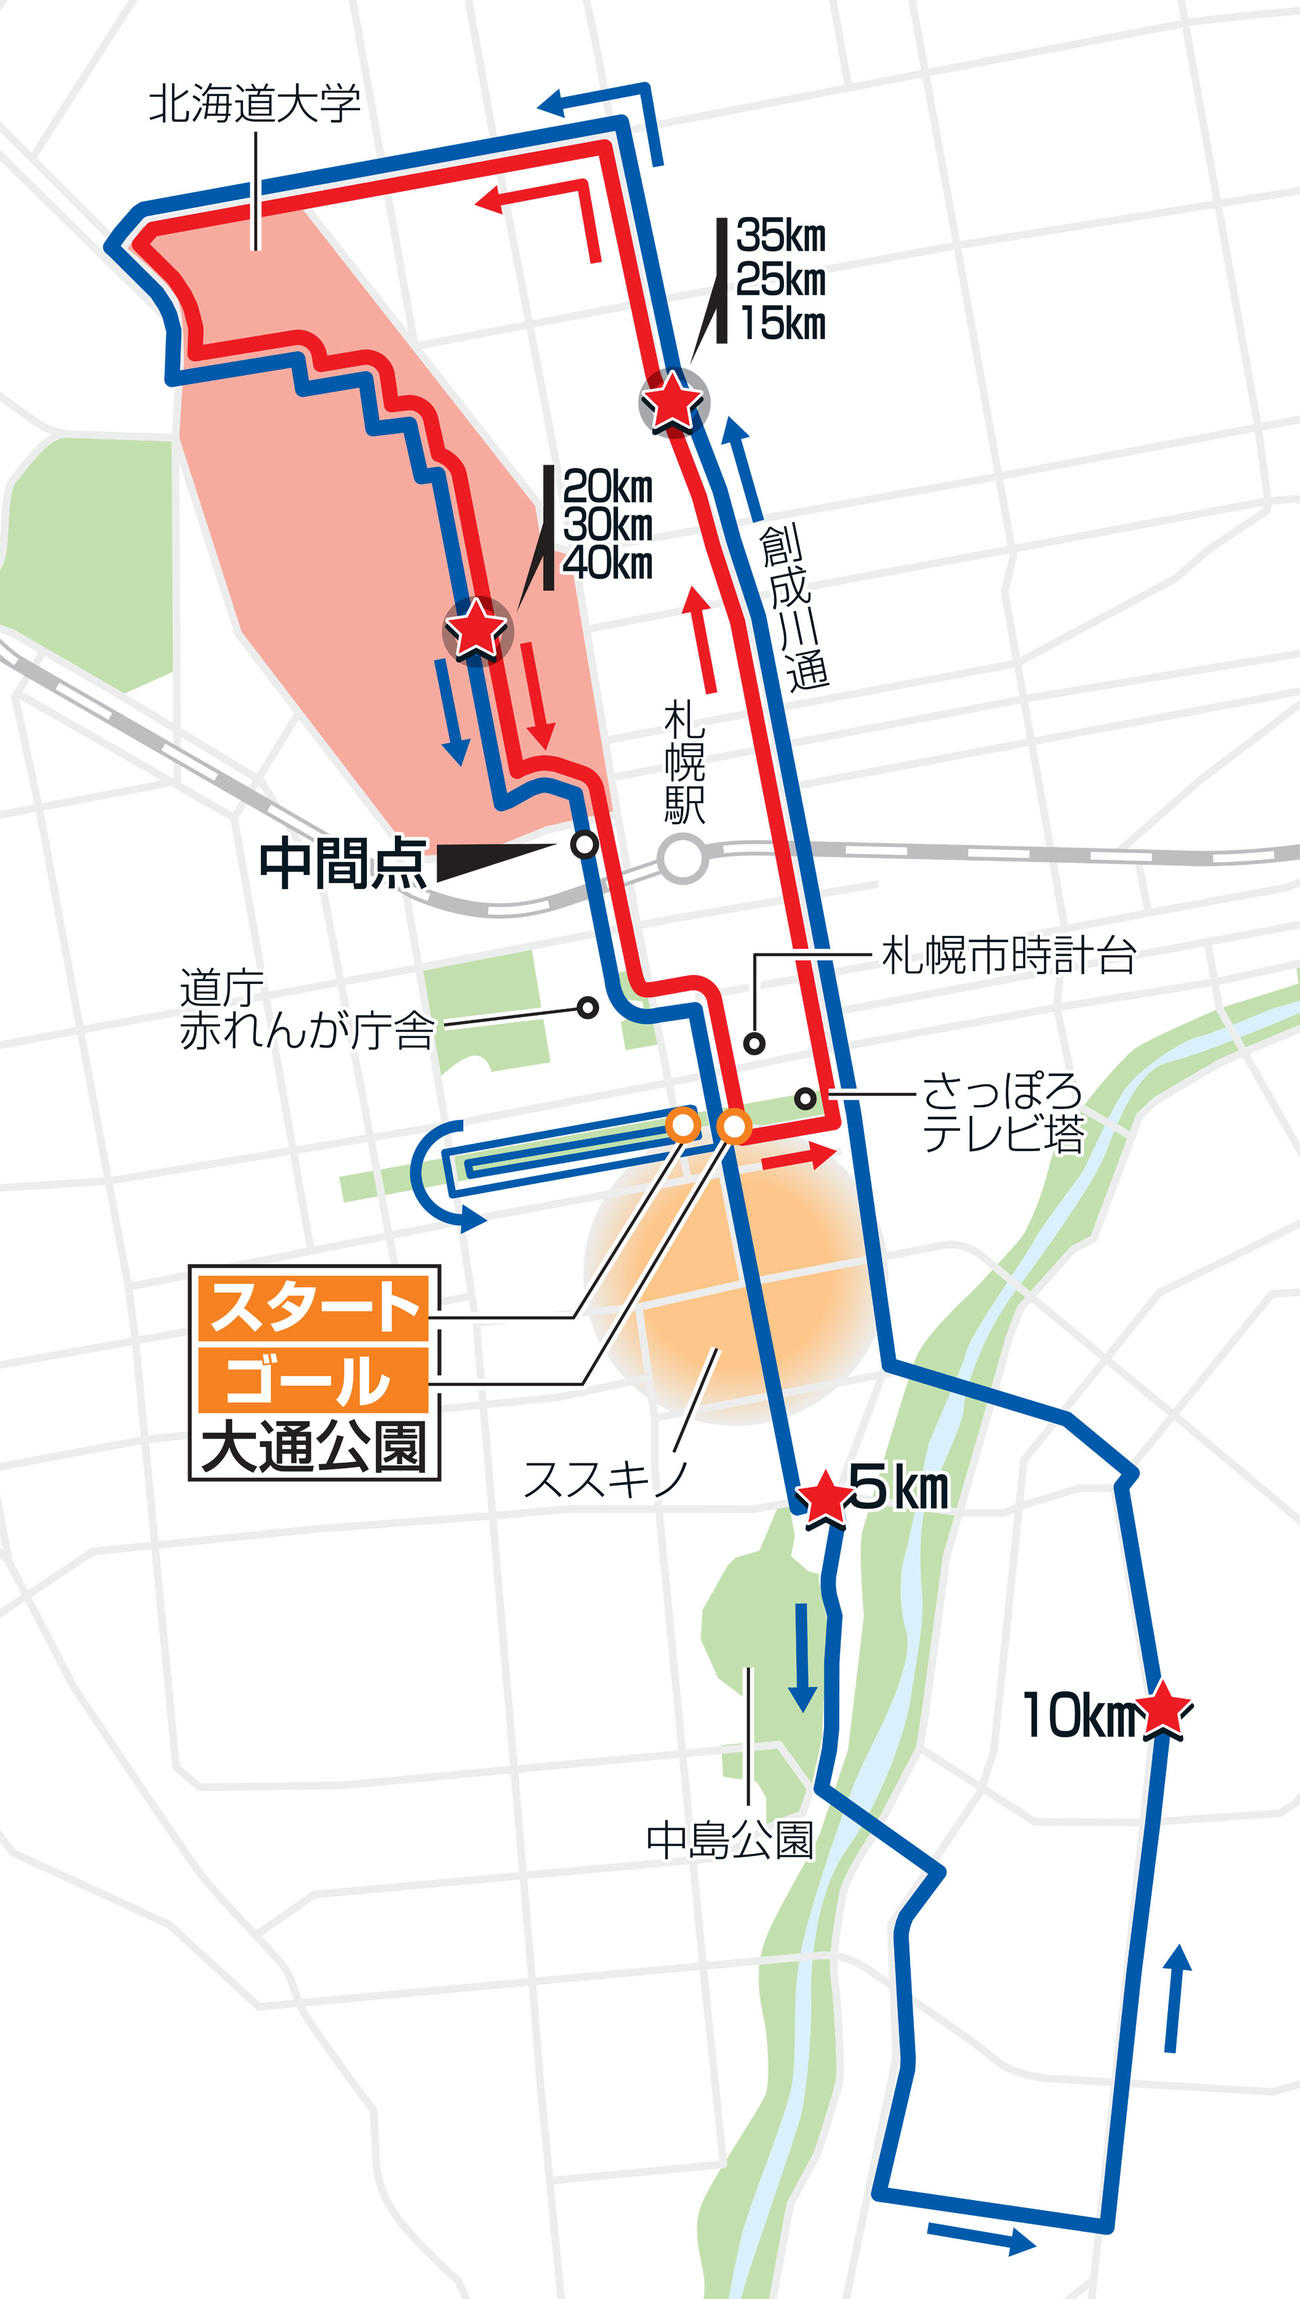 東京五輪マラソンコース